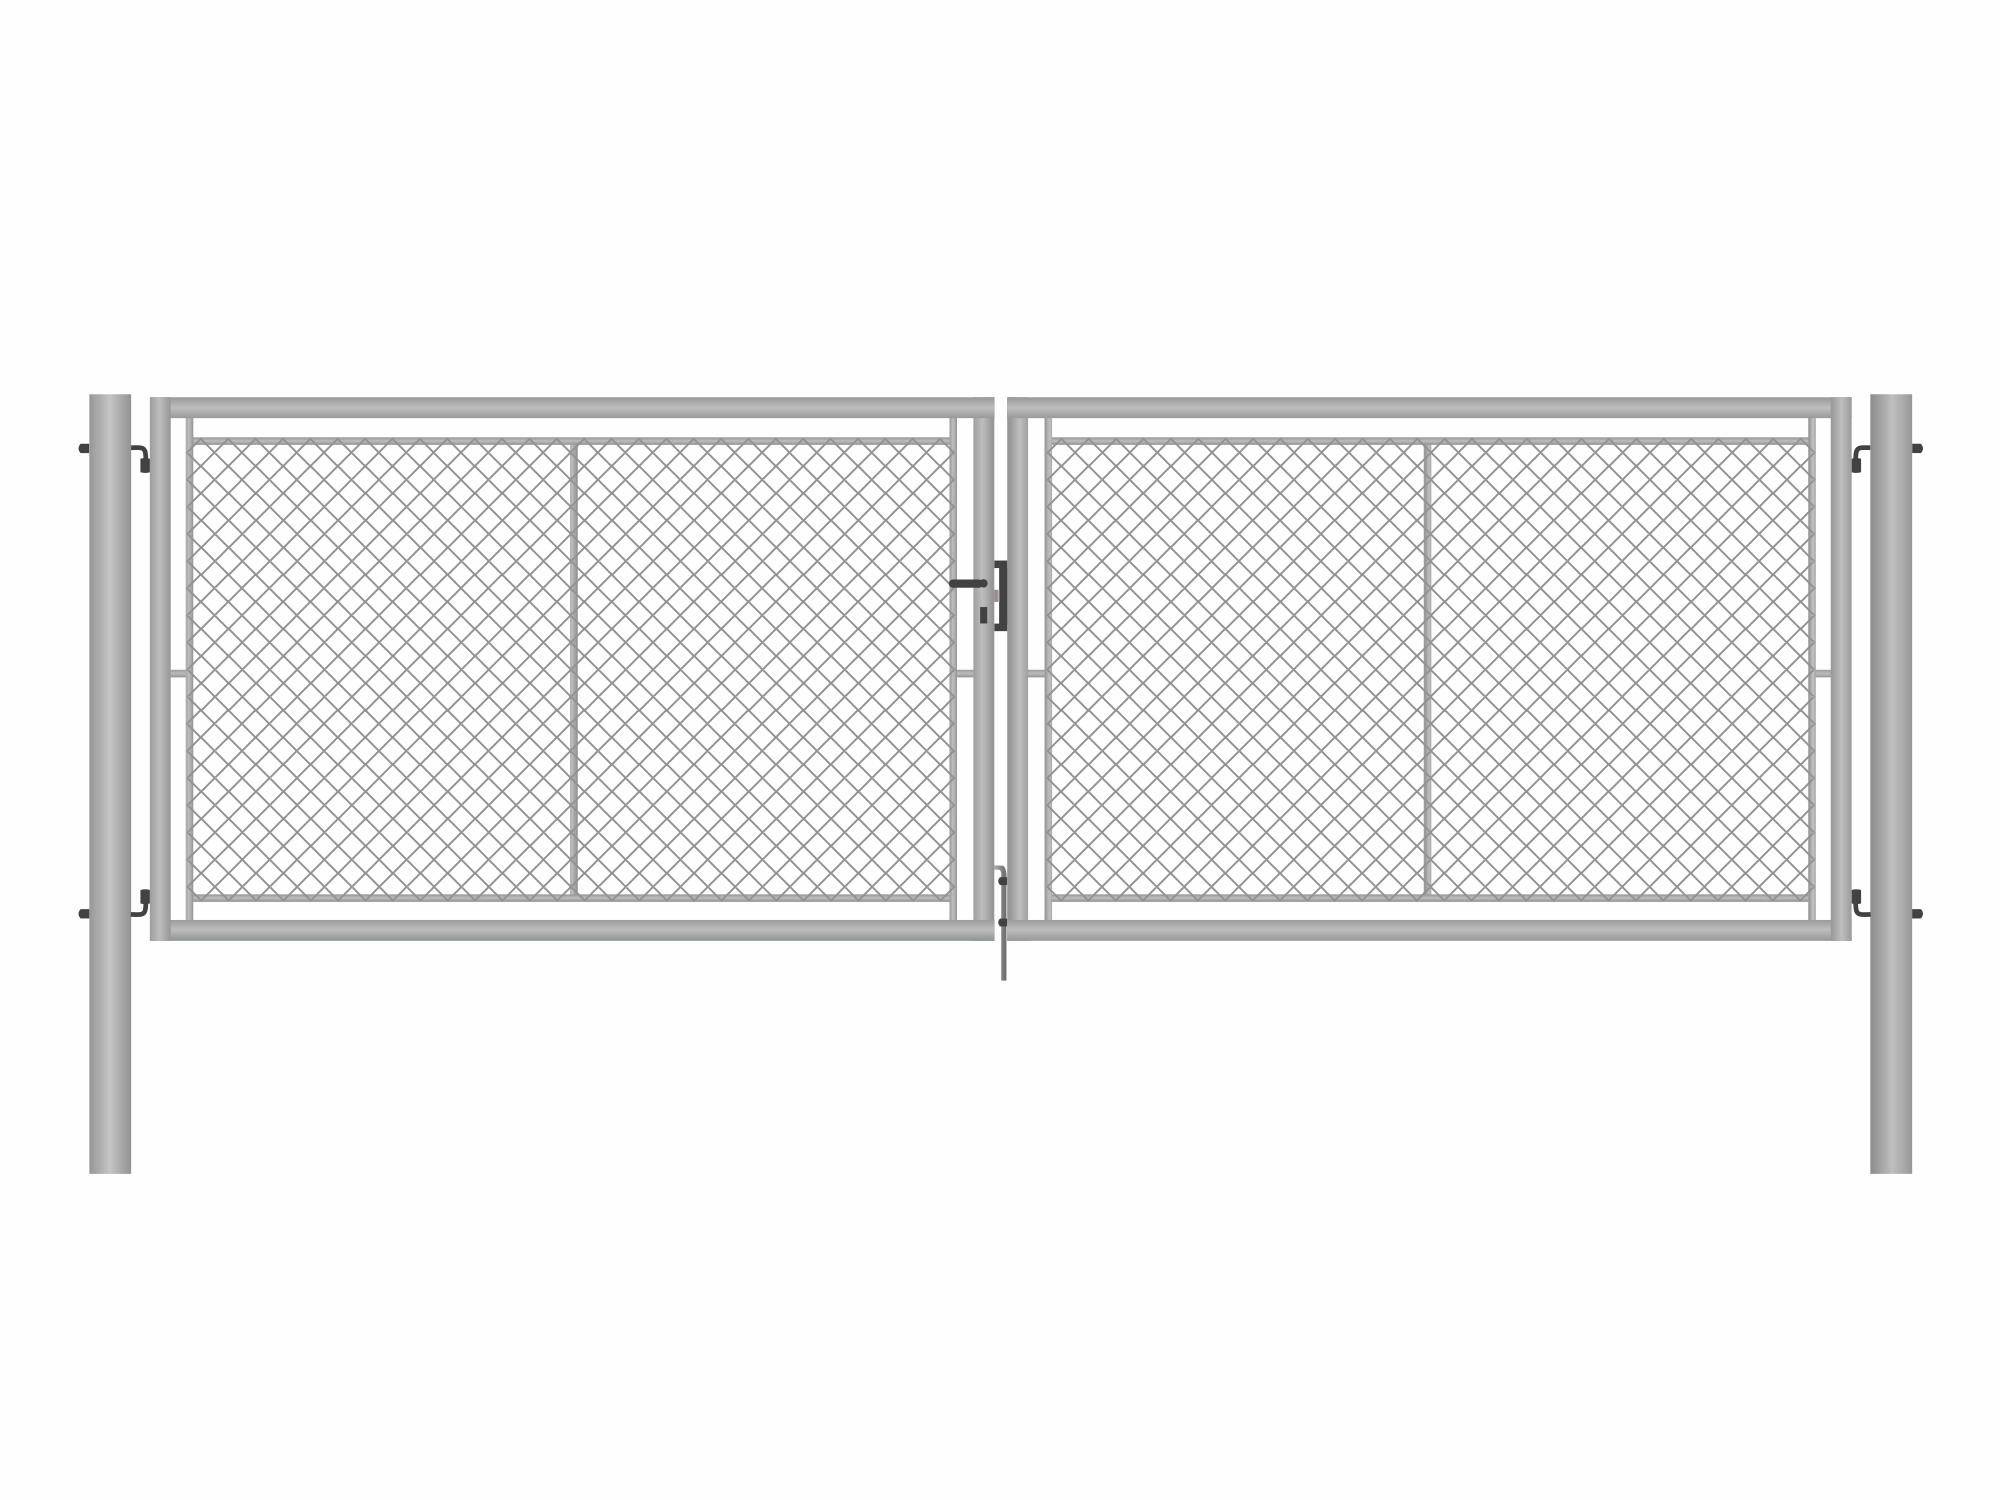 Brána zahradní dvoukřídlá pozink, výška 120 x 400 cm, FAB, s výplní klasického pletiva PLOTY Sklad5 9874 535